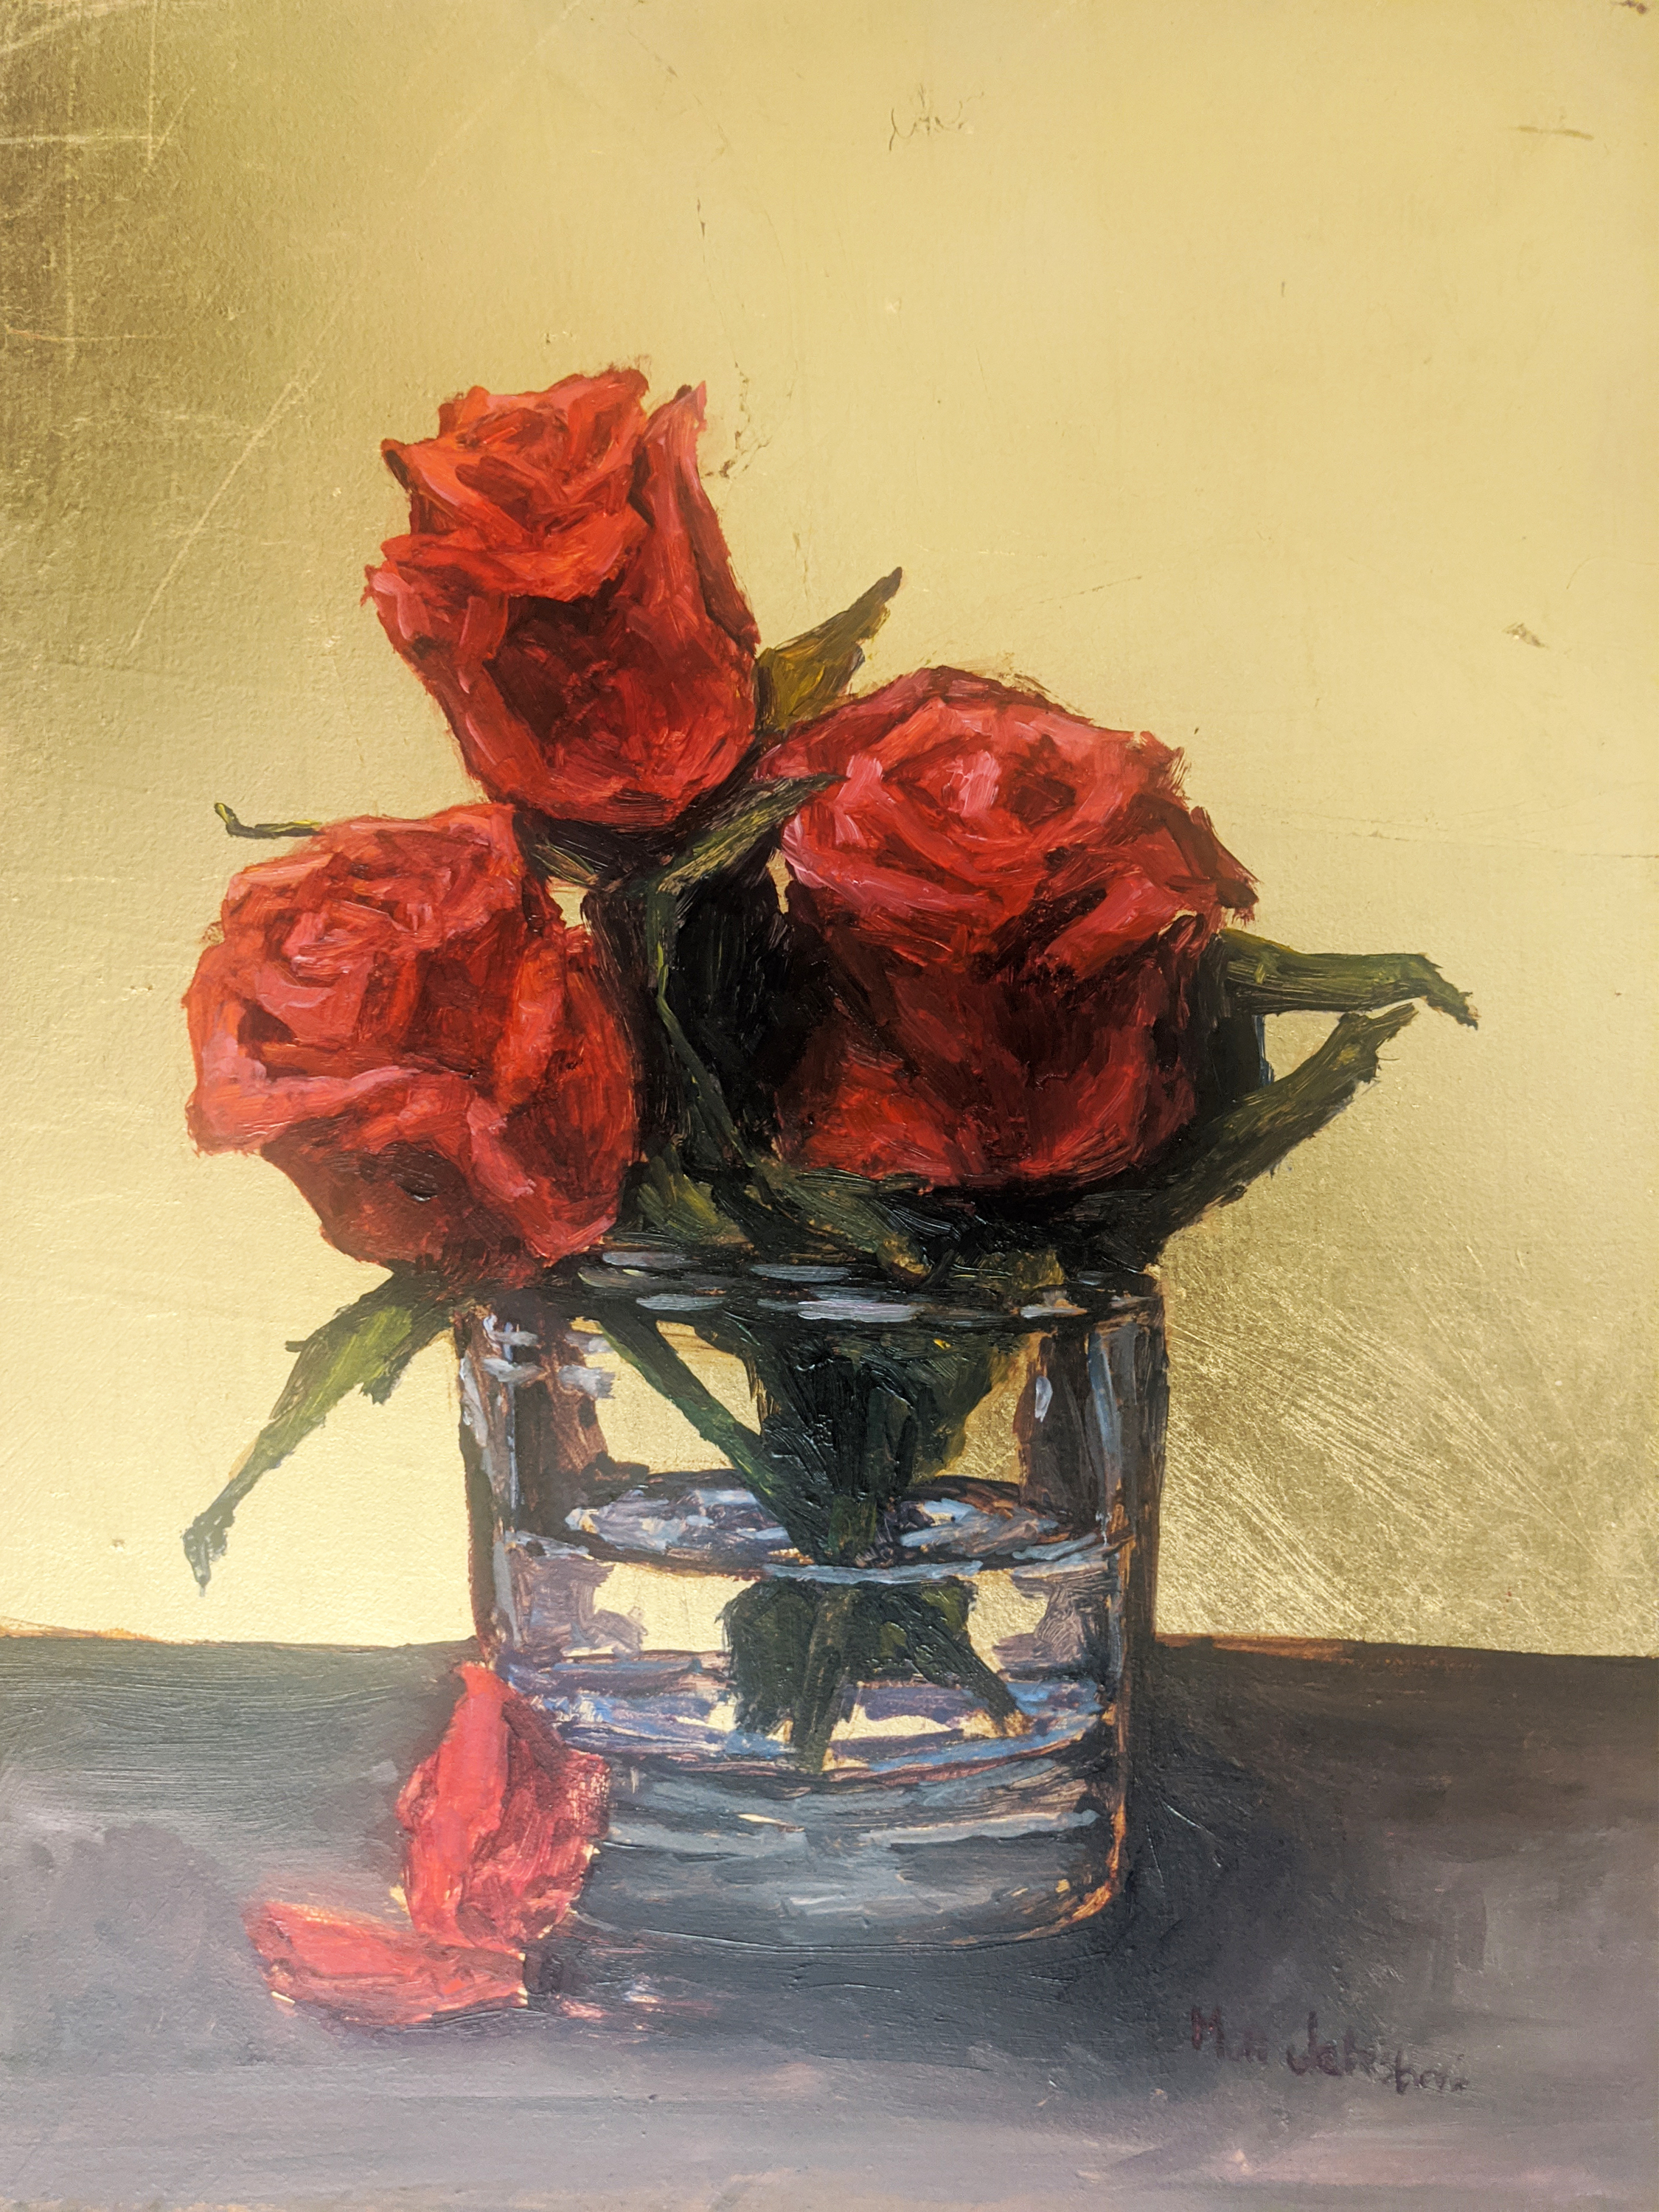 Red roses in a vase m6v9kz